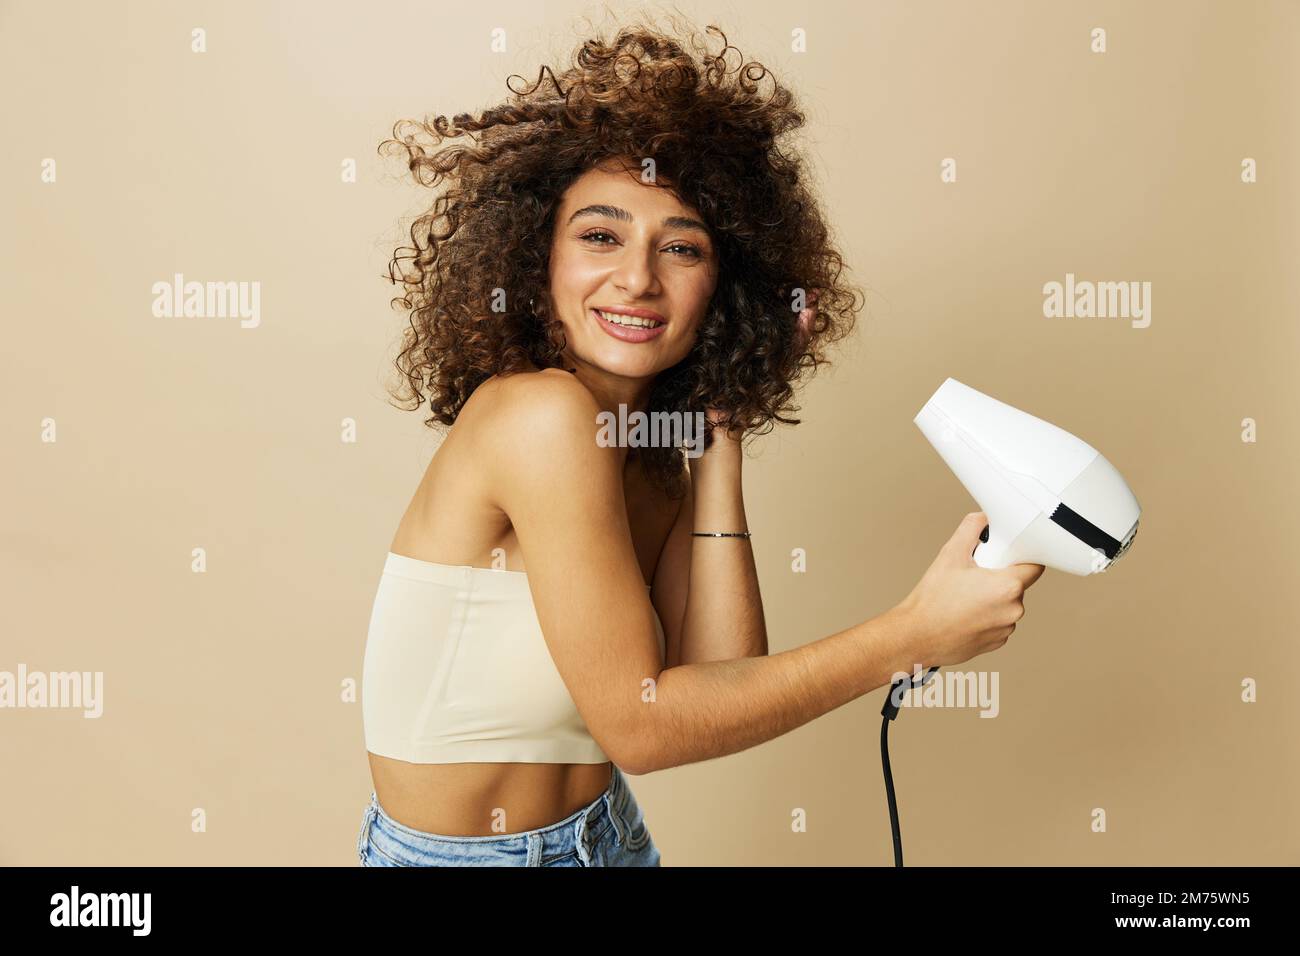 Femme sèche les cheveux freux avec sèche-cheveux, maison beauté produits coiffants cheveux, sourire sur fond beige Banque D'Images